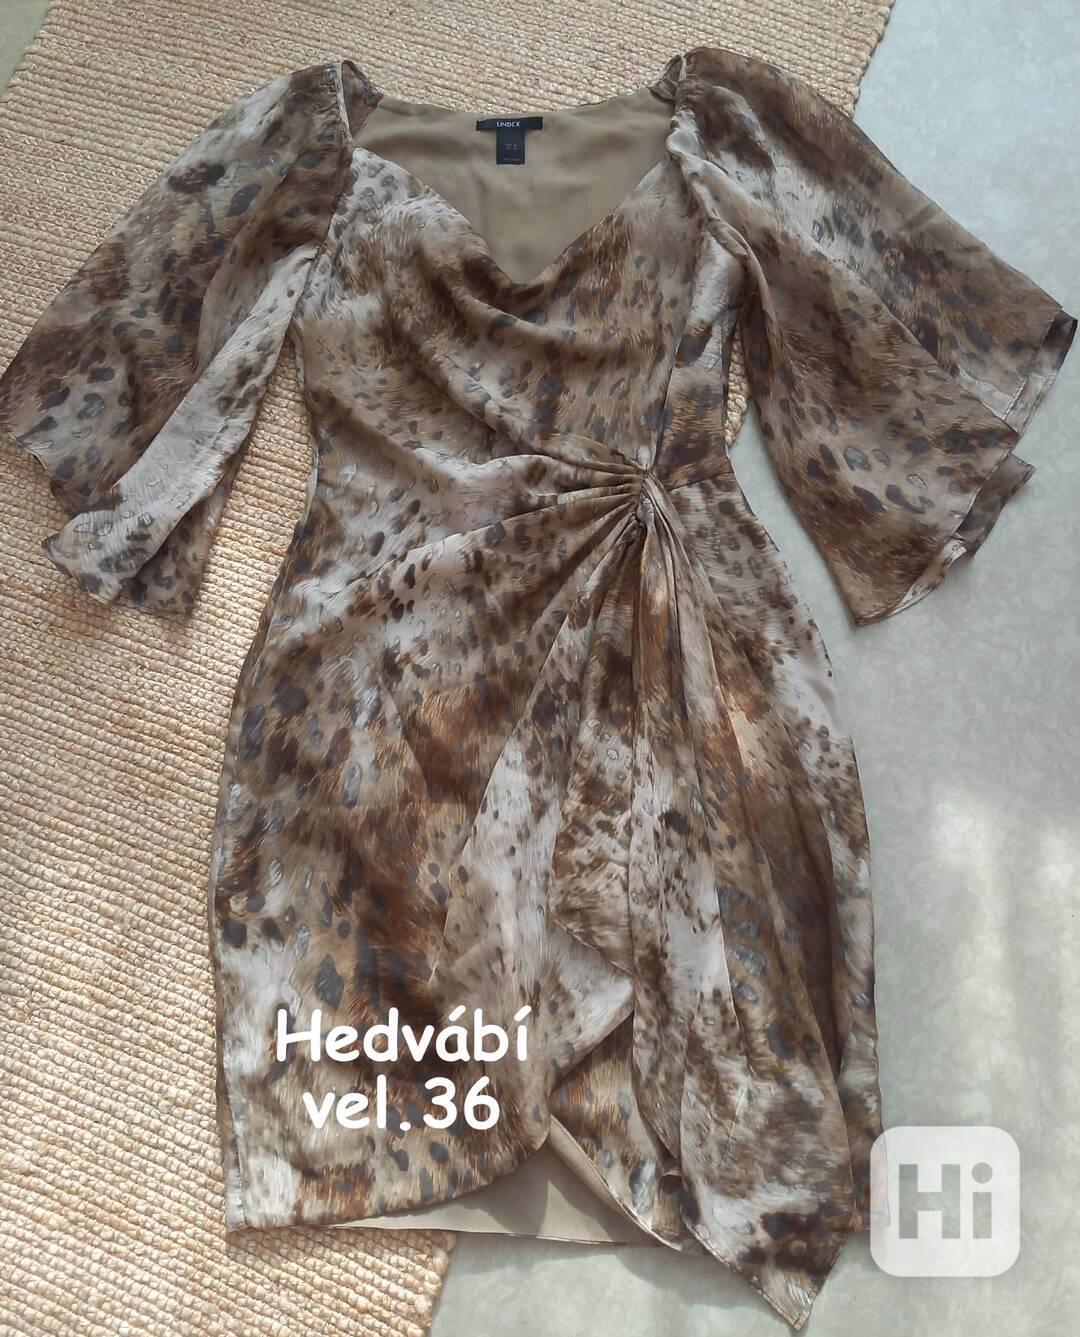 LINDEX hedvábné šaty velikost M/36, p.c. 2500,- - foto 1